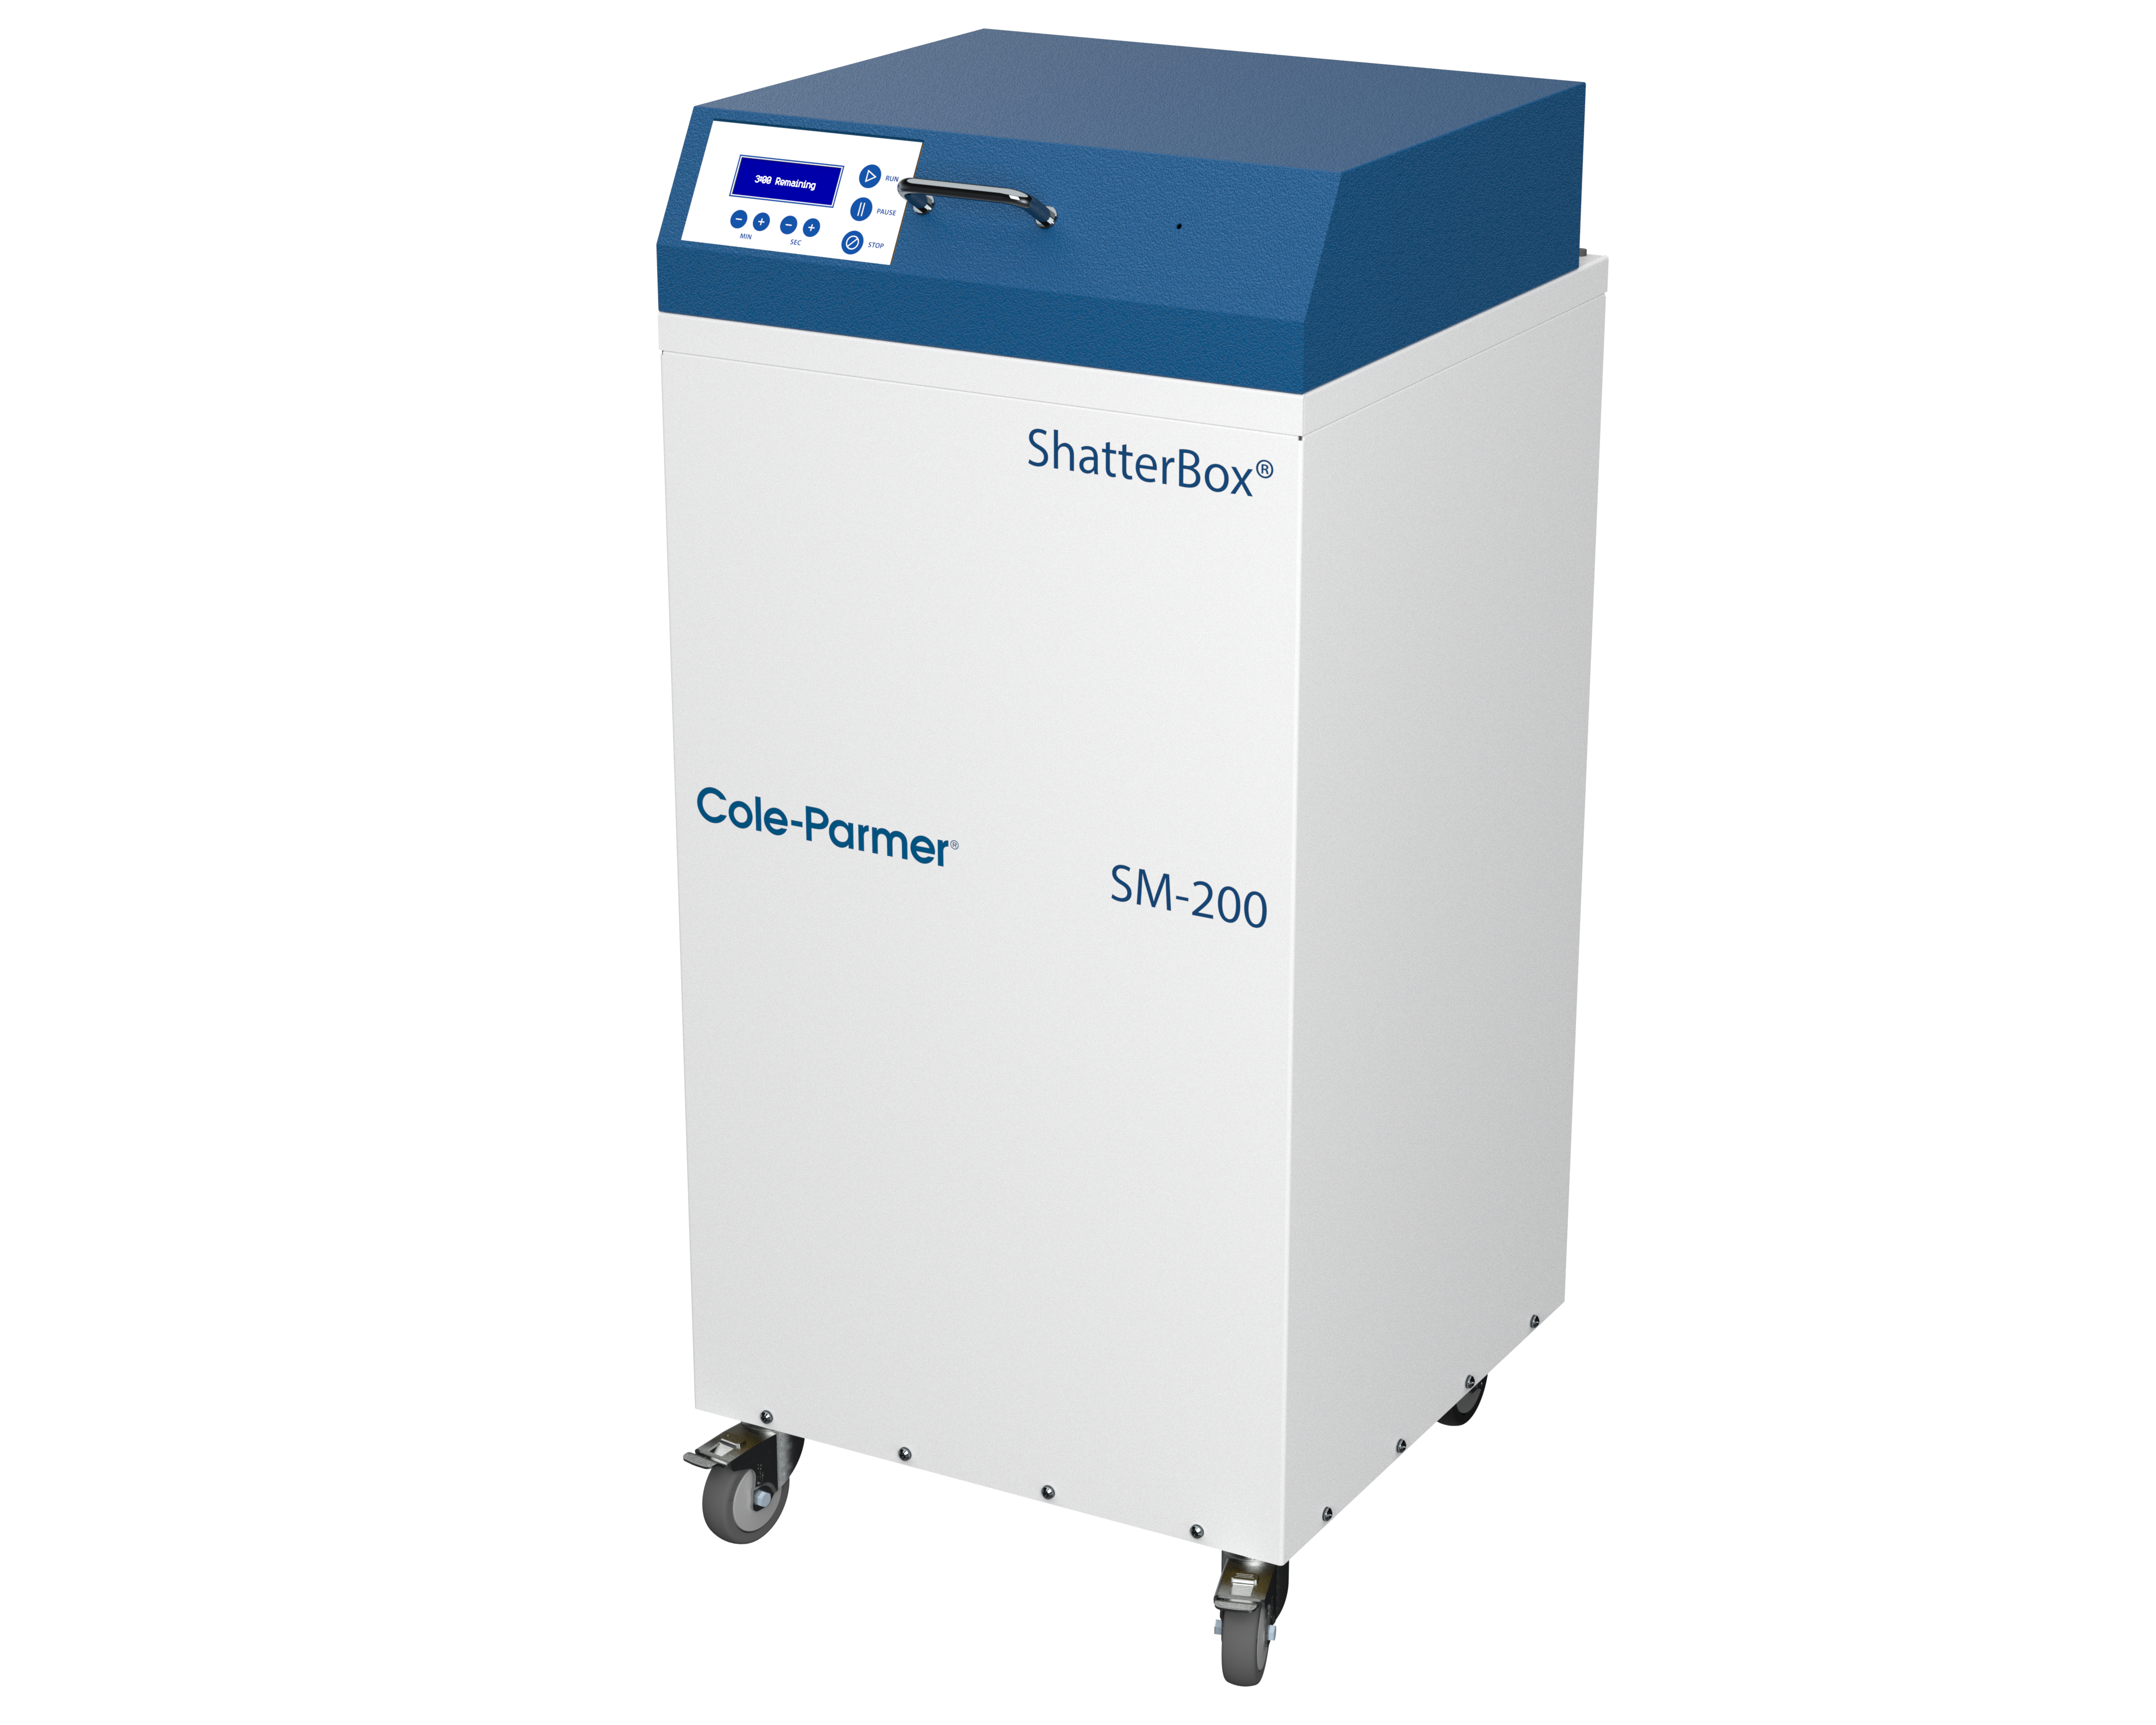 SM-200 程控隔音式盤式研磨機 Shatterbox (原 8530) - cole-parmer, cole parmer, spex, SM-200, 程控隔音式盤式研磨機. Shatterbox, 8530